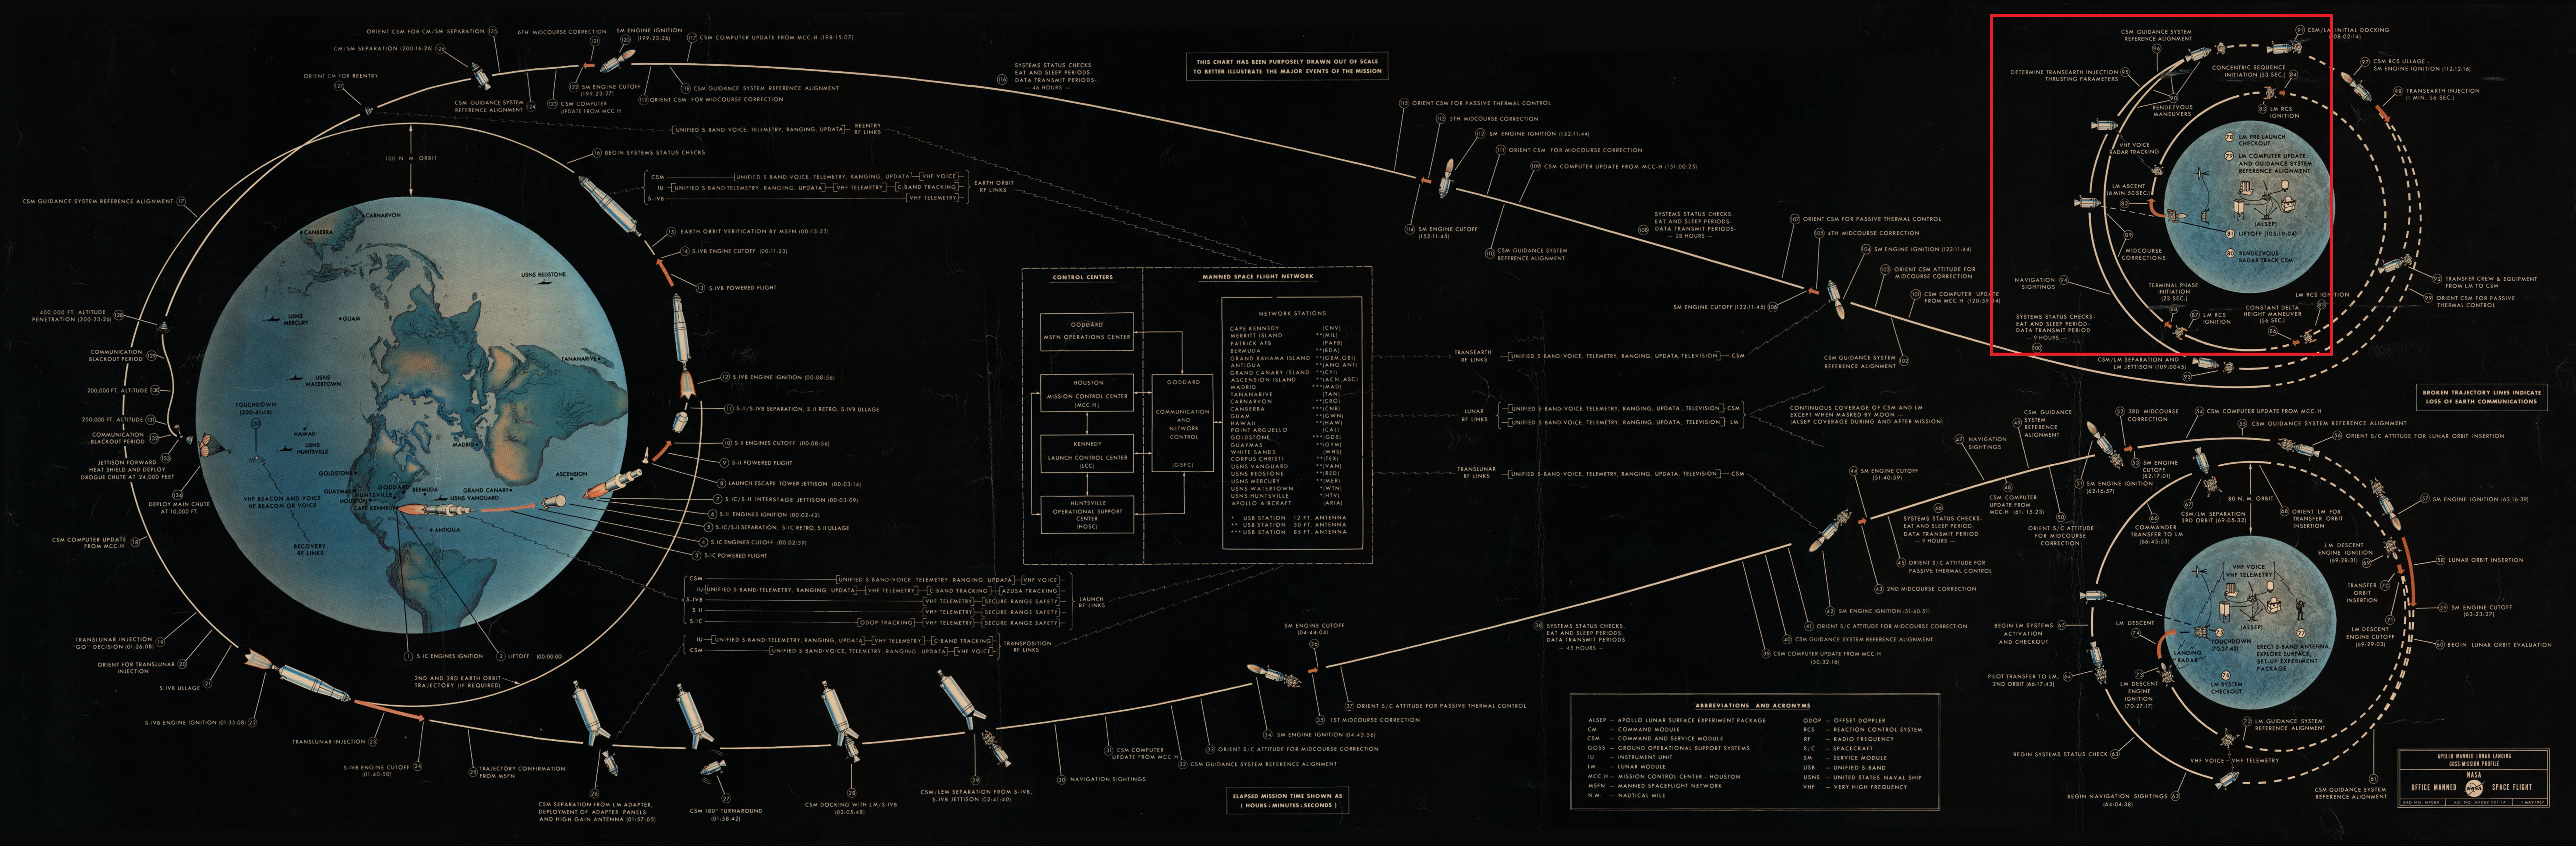 Diagram explicatif du déroulé d'une mission Apollo - phase de décollage et de rdv en orbite lunaire mise en avant